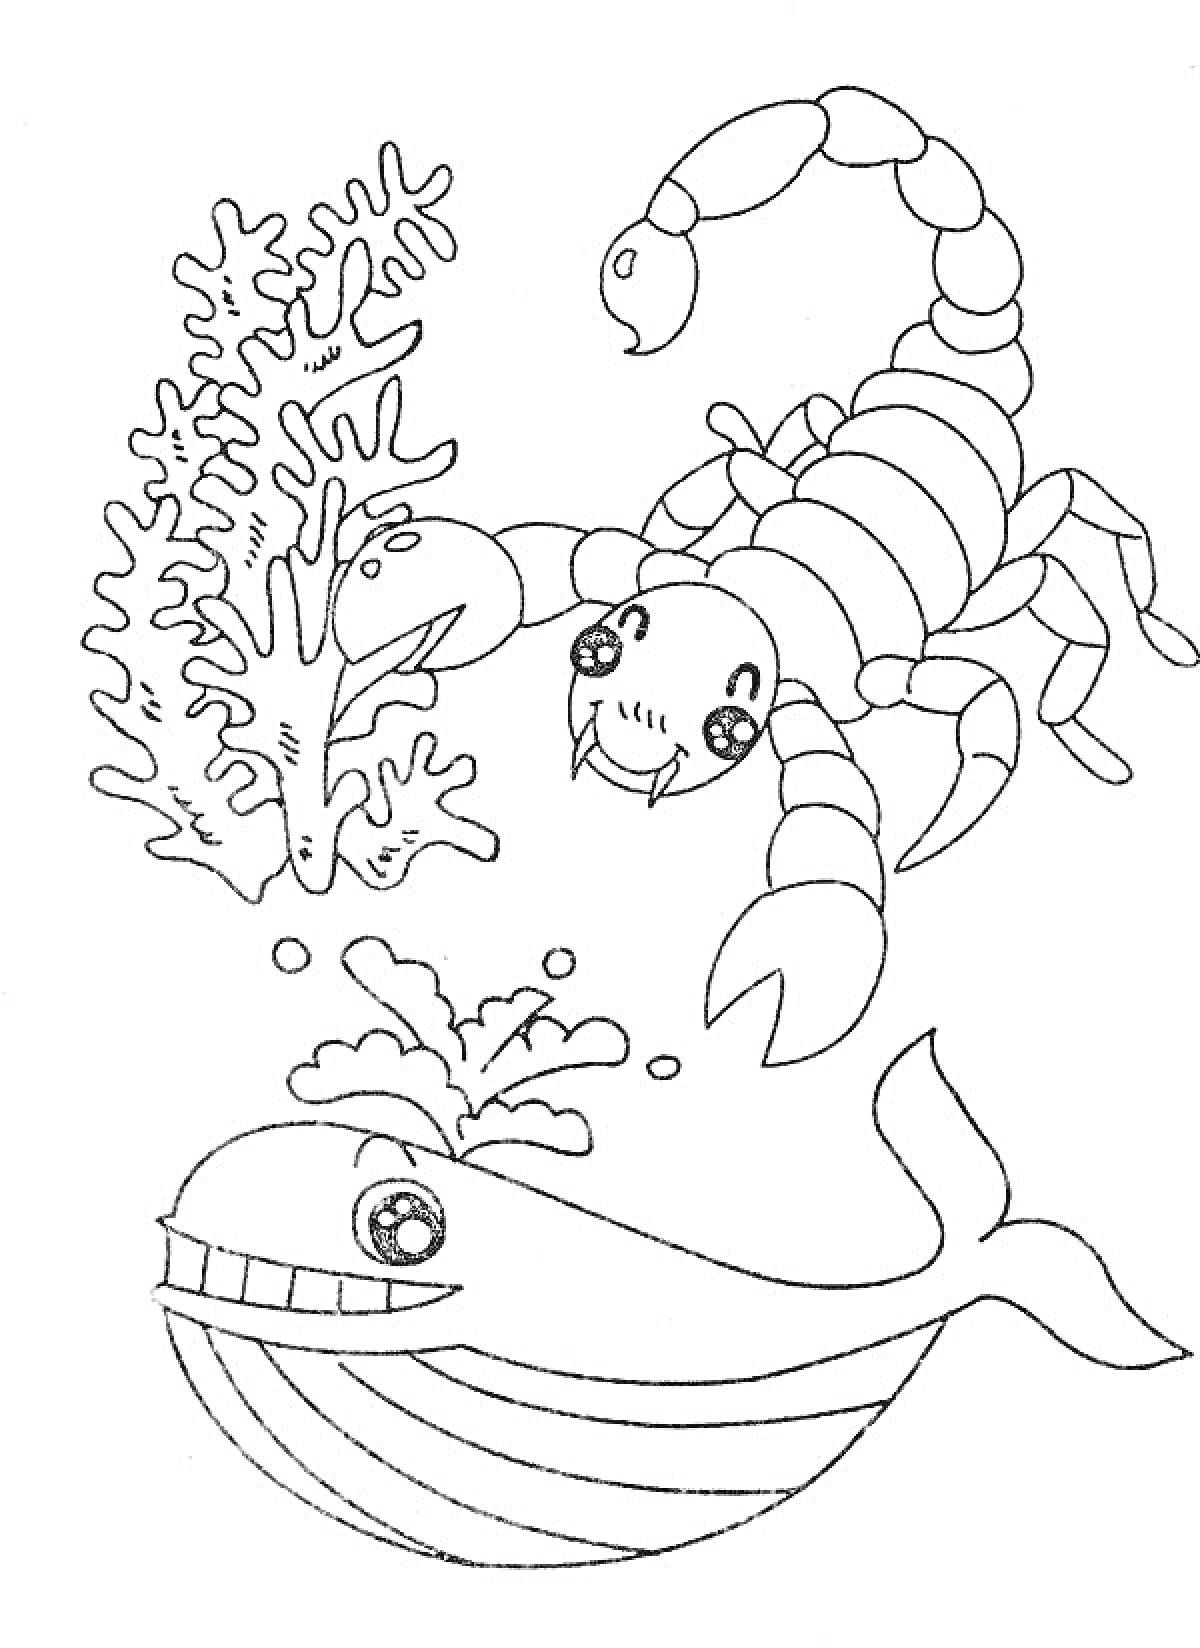 Раскраска Кит и морской скорпион возле коралла